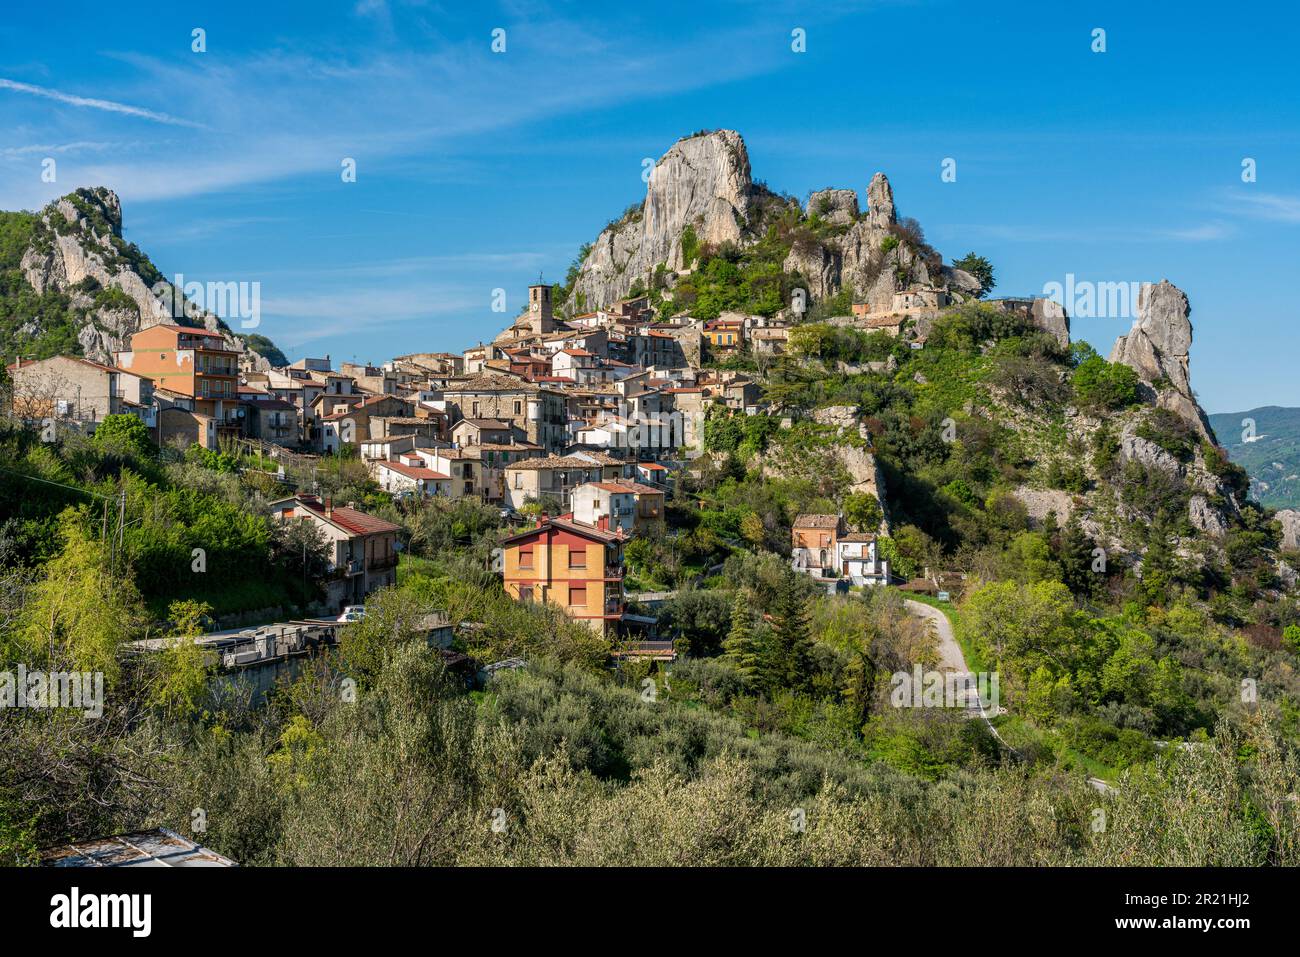 Vue panoramique sur Pennadomo, beau village de la province de Chieti, Abruzzes, centre de l'Italie. Banque D'Images